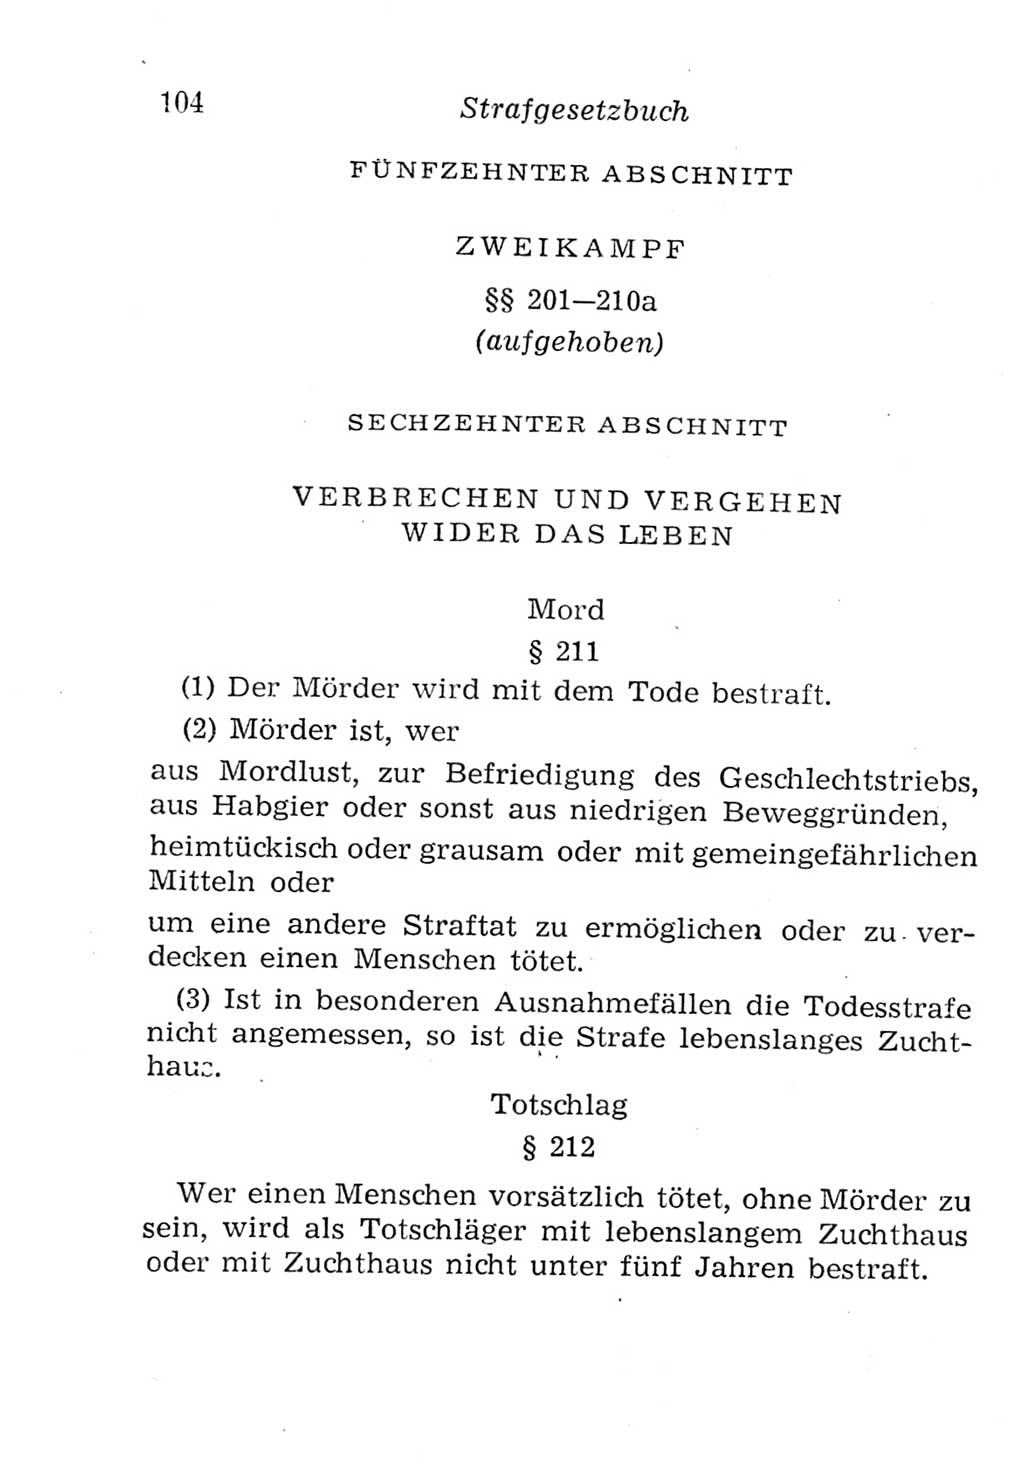 Strafgesetzbuch (StGB) und andere Strafgesetze [Deutsche Demokratische Republik (DDR)] 1957, Seite 104 (StGB Strafges. DDR 1957, S. 104)